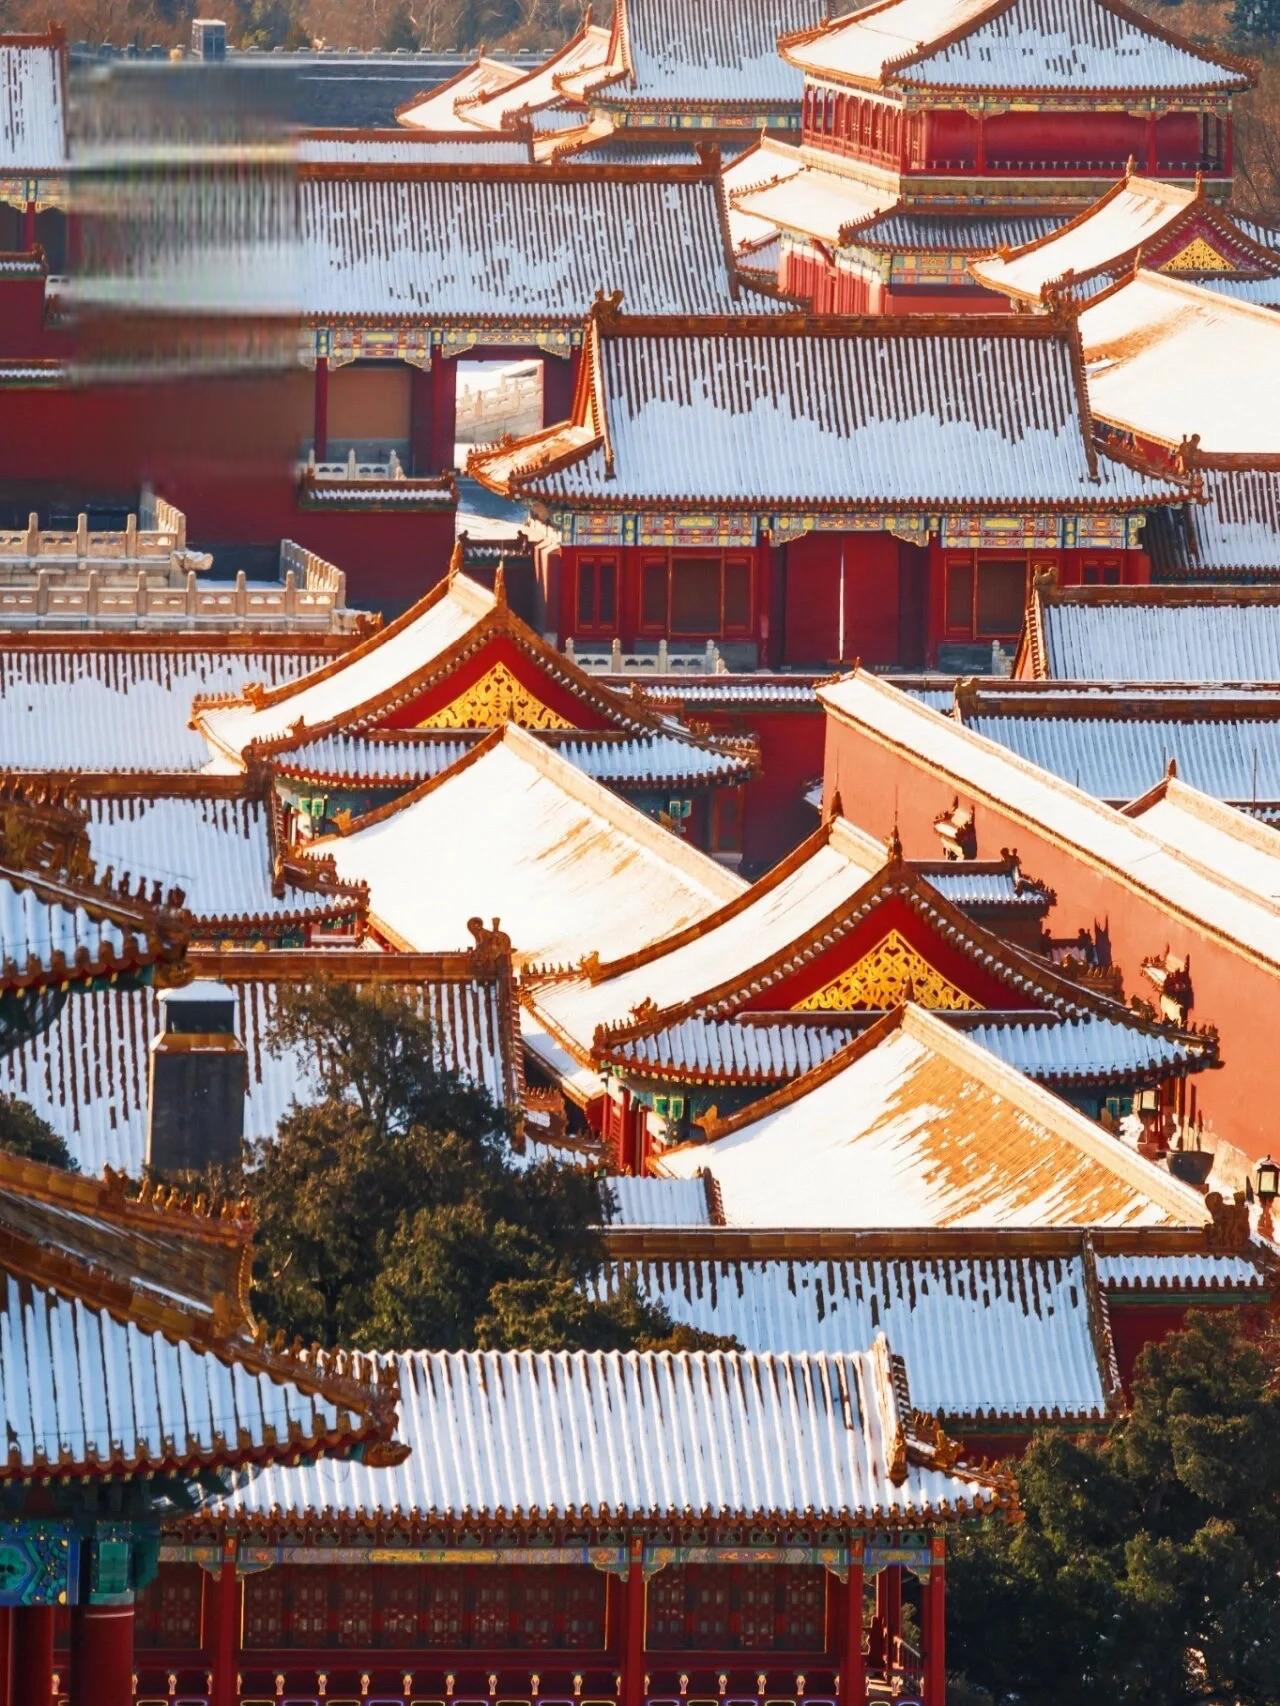 故宫紫禁城雪景:宛若仙境 一下雪,北京就变成了北平,故宫则变成了